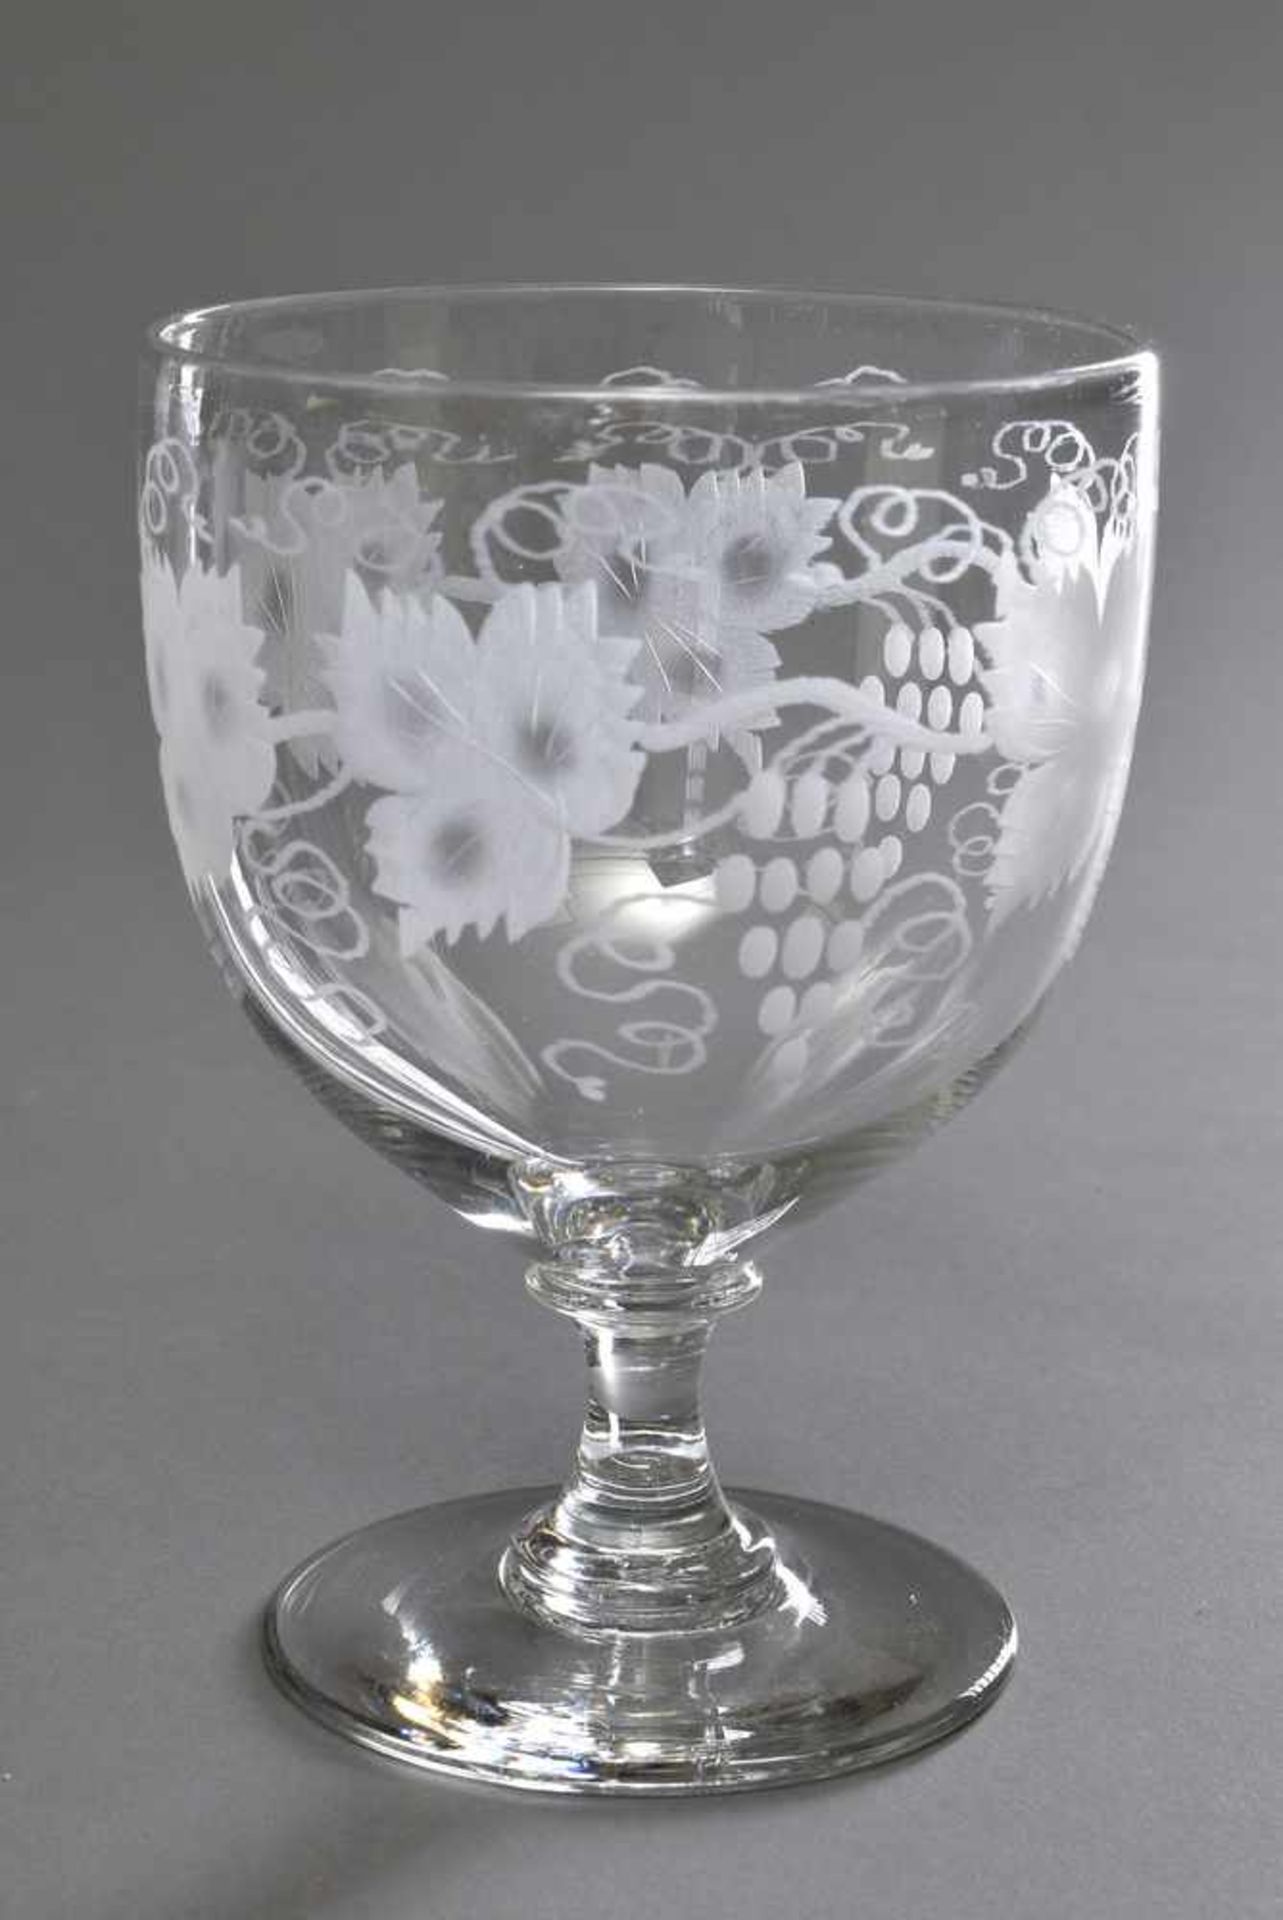 11 große Gläser "Weinlaubdekor" nach altem Vorbild, 20.Jh., H. 14,5cm, 1 Glas am Standring gechipt - Image 3 of 3